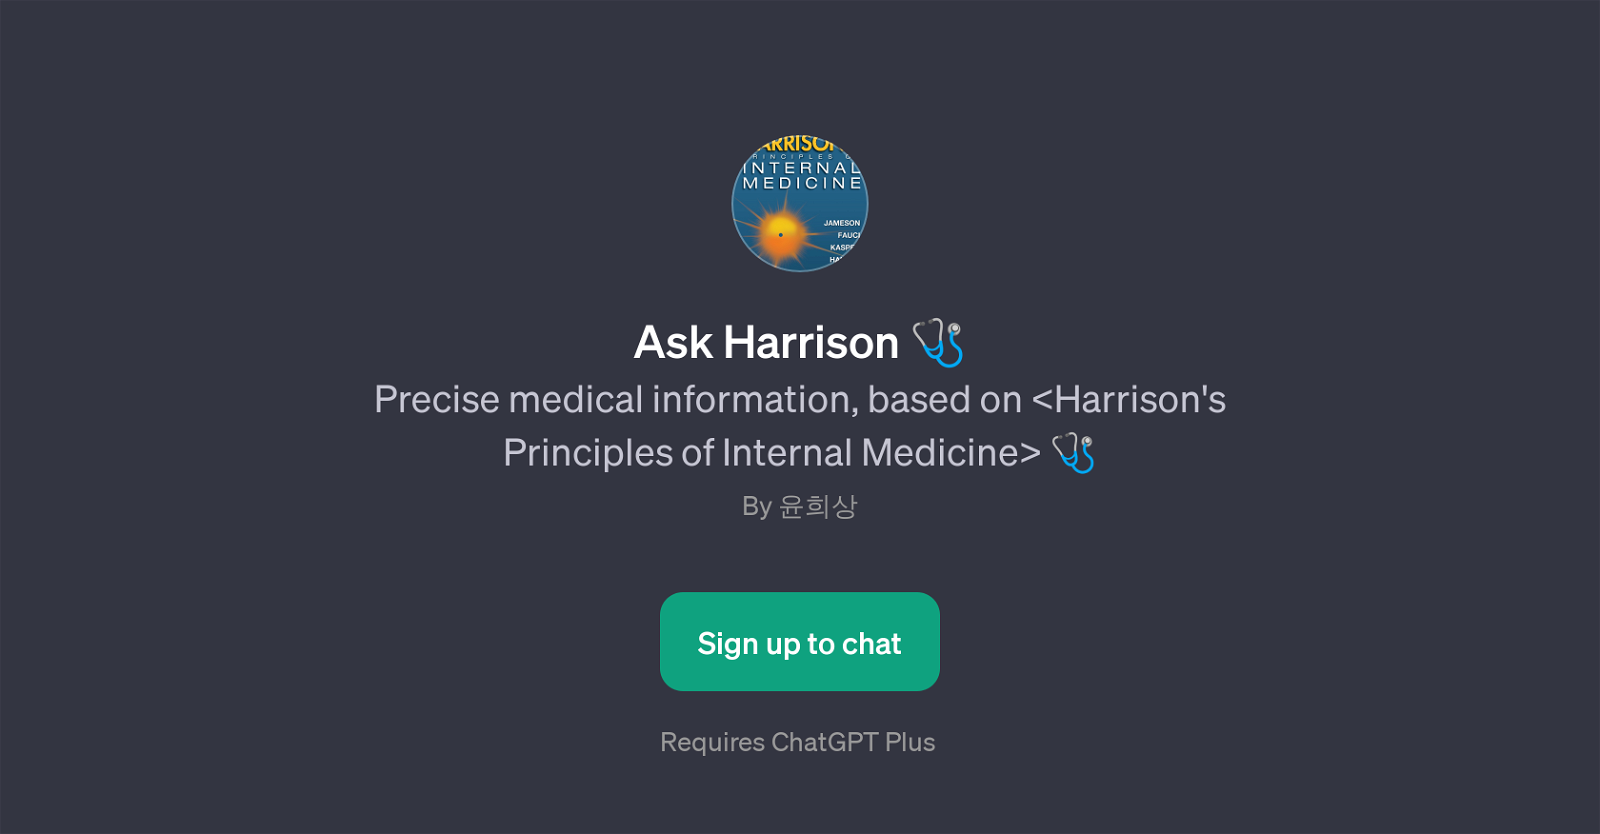 Ask Harrison website